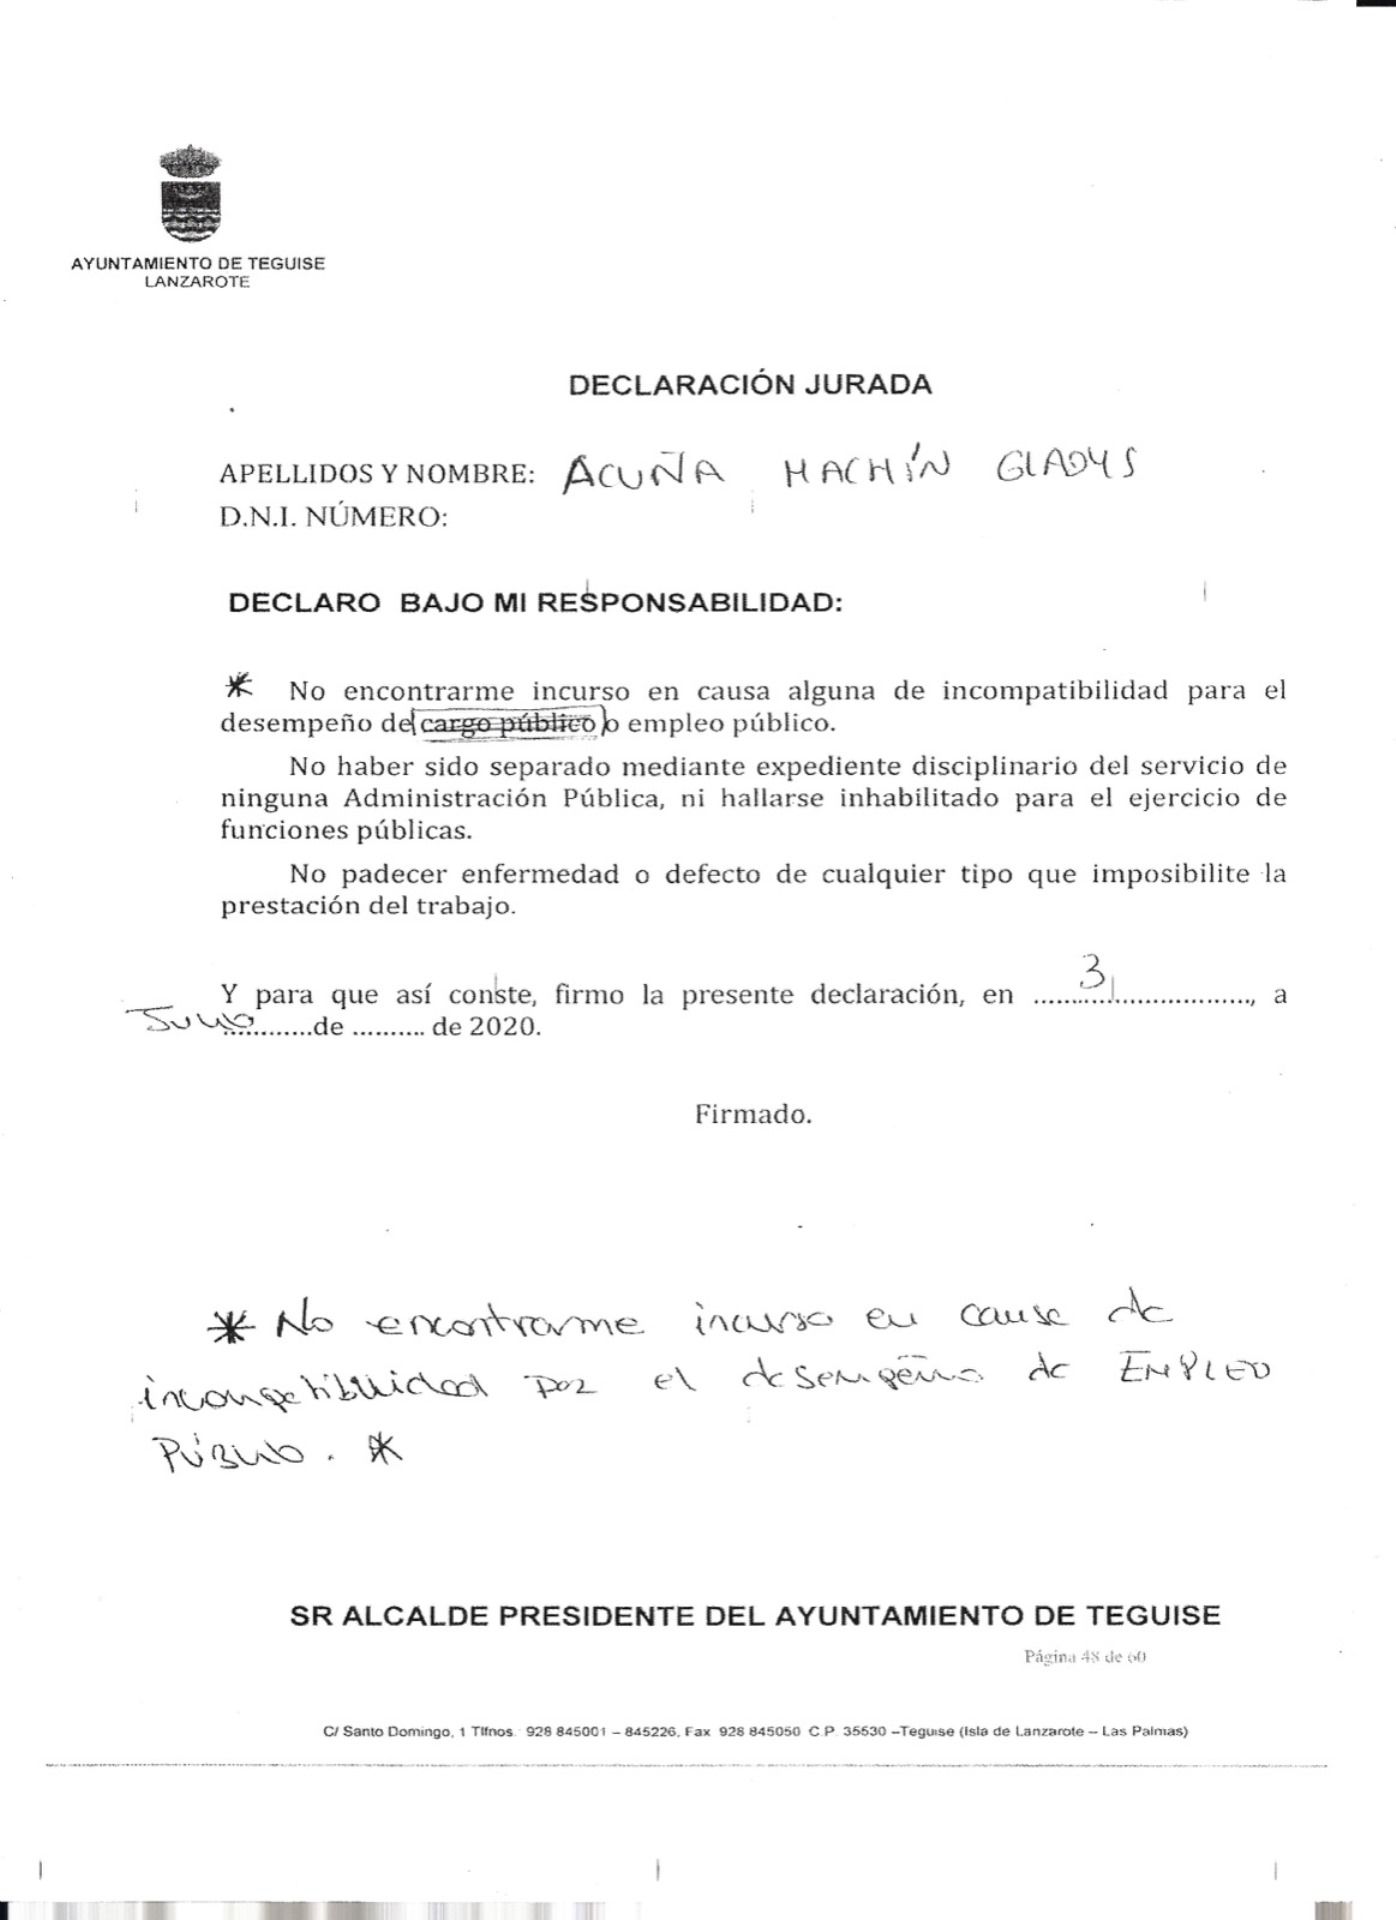 Teguise + Unido denuncia que el expediente de contratación de Gladys Acuña "es una chapuza" con "tachones a bolígrafo"